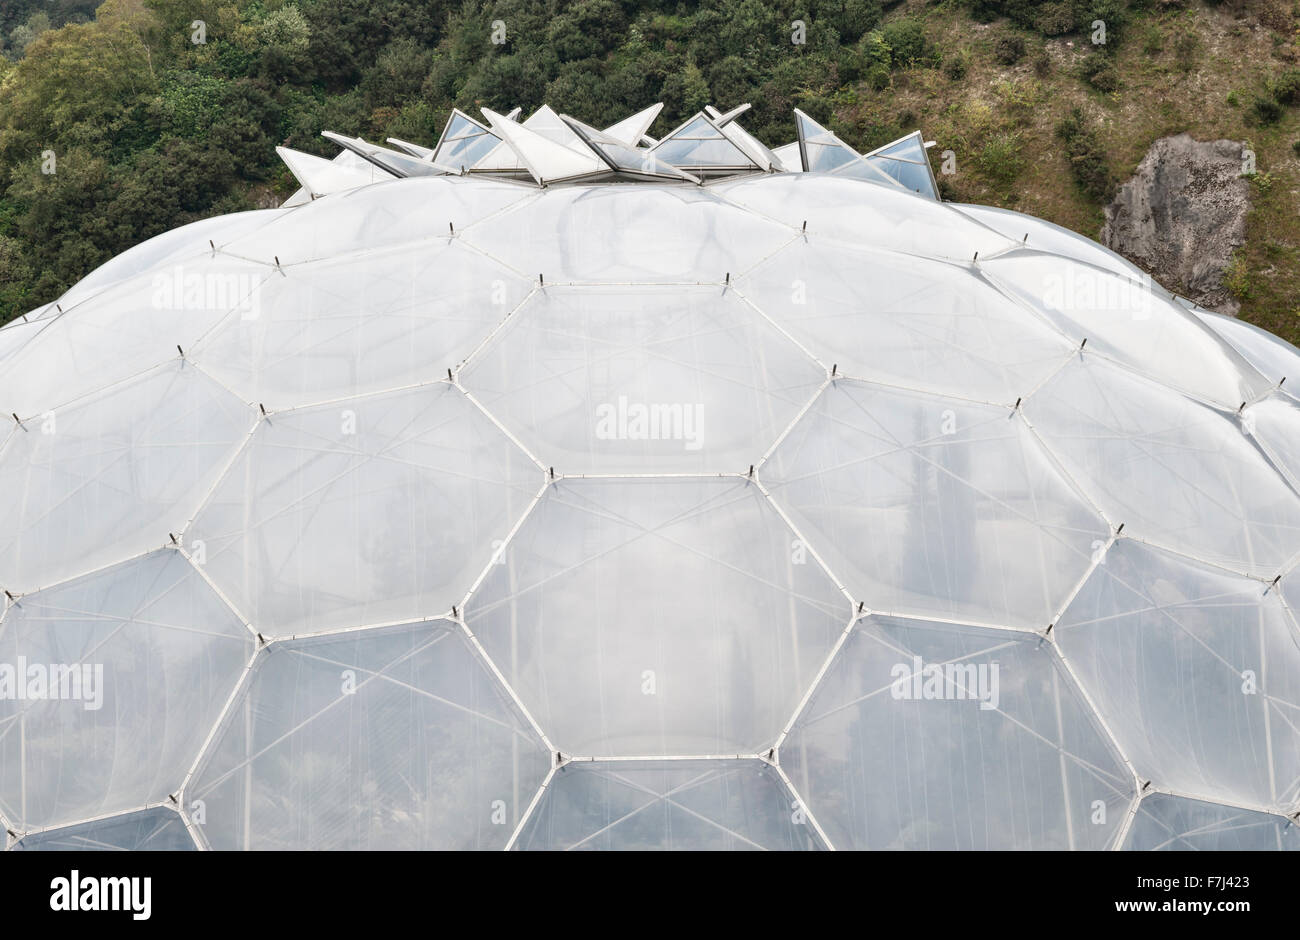 The Eden Project, Cornwall, Royaume-Uni. Détail de l'un des biomes de Nicholas Grimshaw, montrant le cadre hexagonal et le système de ventilation revêtus d'ETFE Banque D'Images